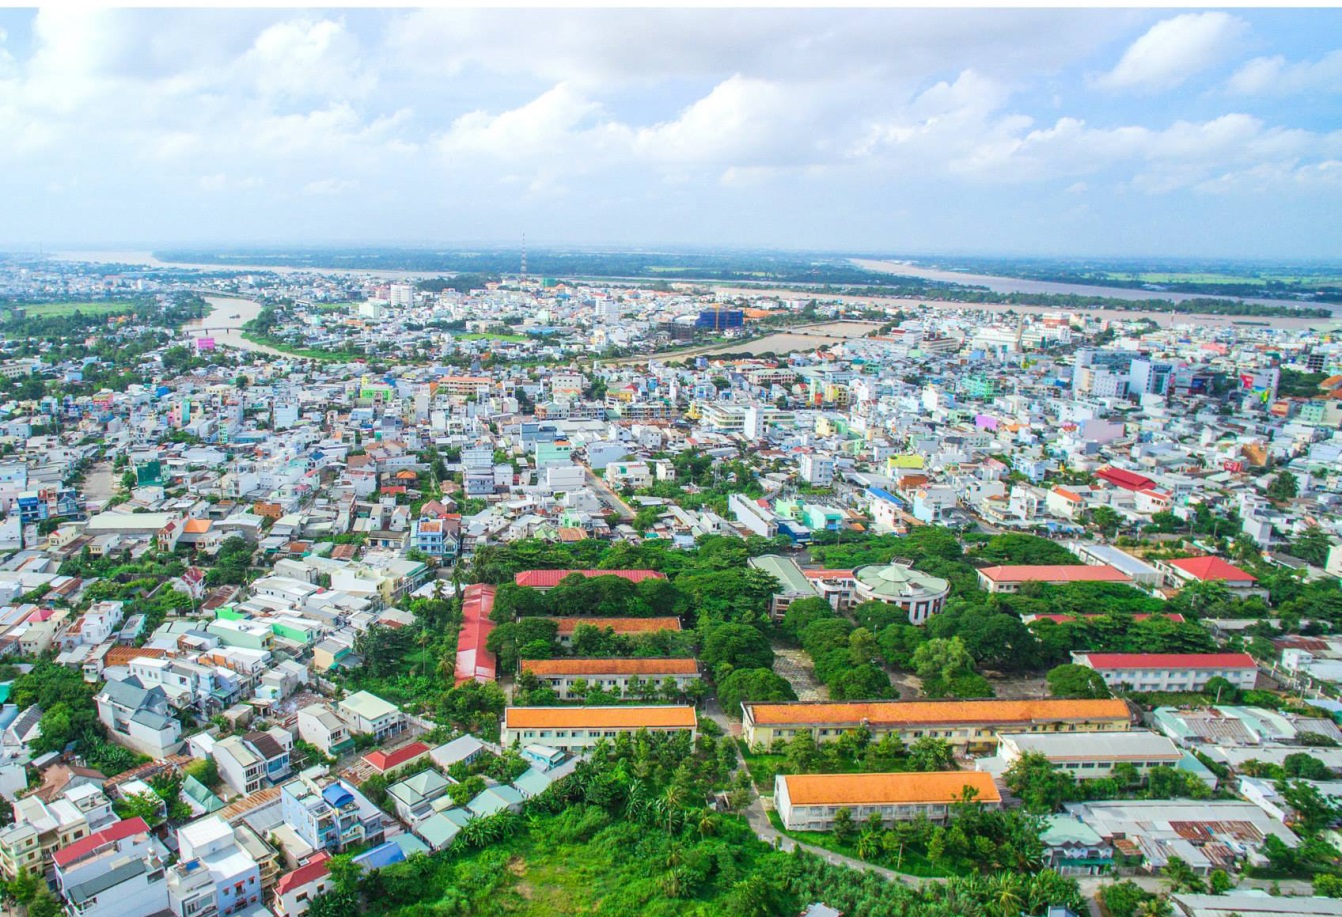 Thành phố Long Xuyên đặt mục tiêu trở thành đô thị loại I vào năm 2020